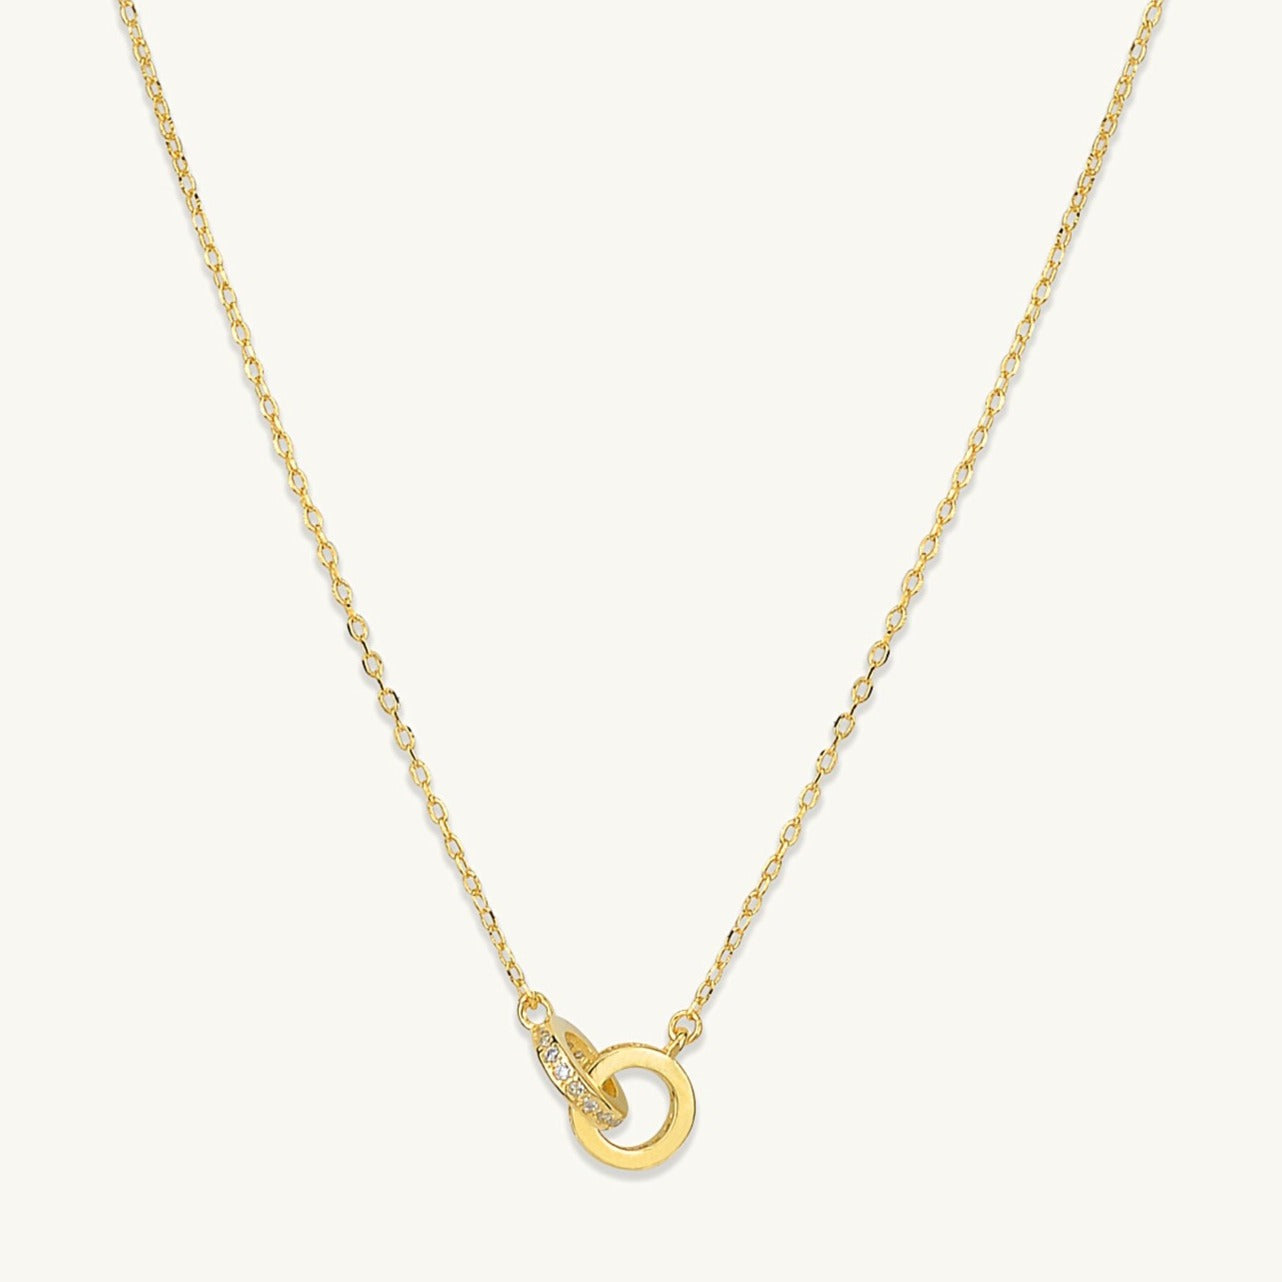 Bond Sapphire Necklace